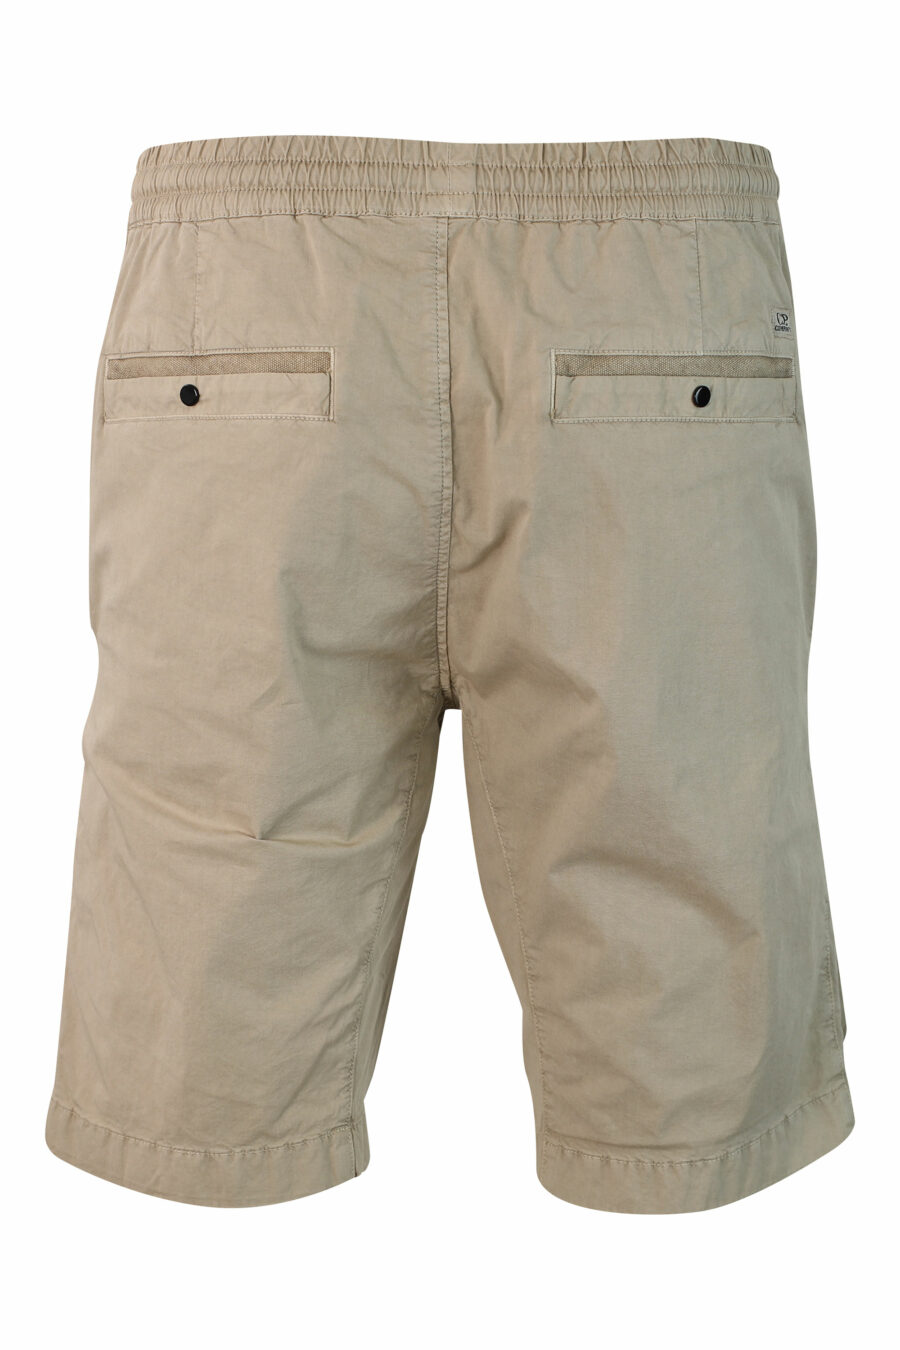 Short beige extensible avec poches avant et mini-logo circulaire - IMG 9909 1